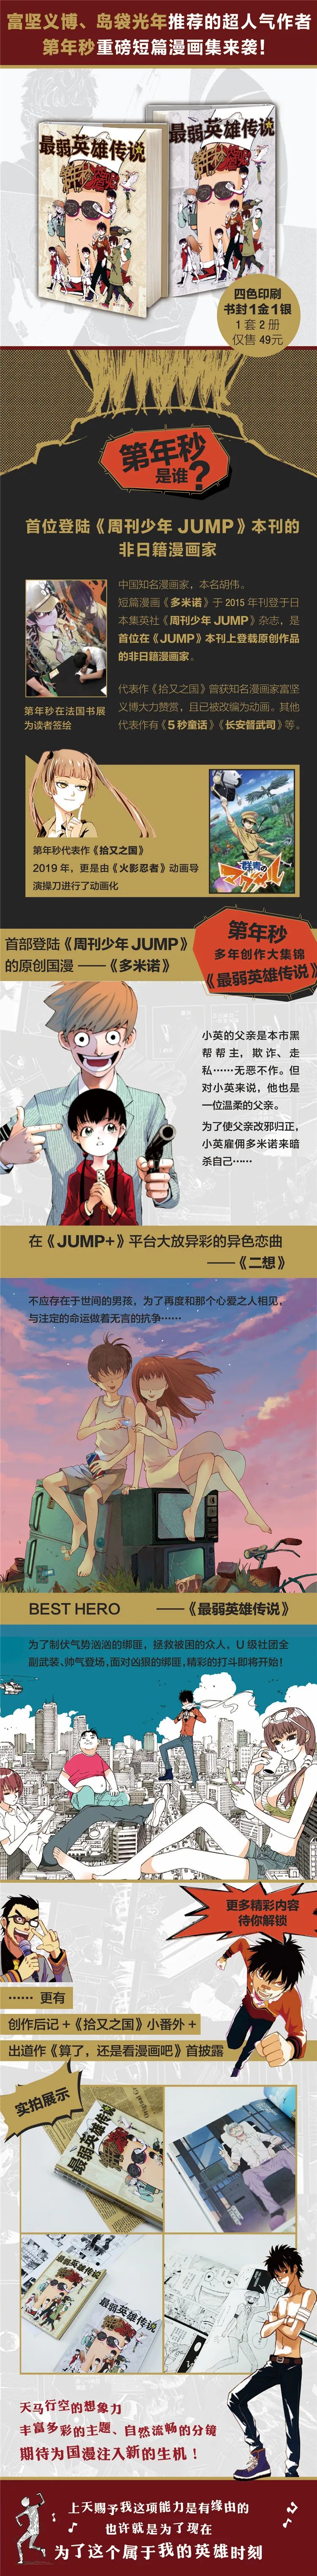 首登 少年jump 的中国漫画 到底有多厉害 Wuhu动画人空间微信公众号文章